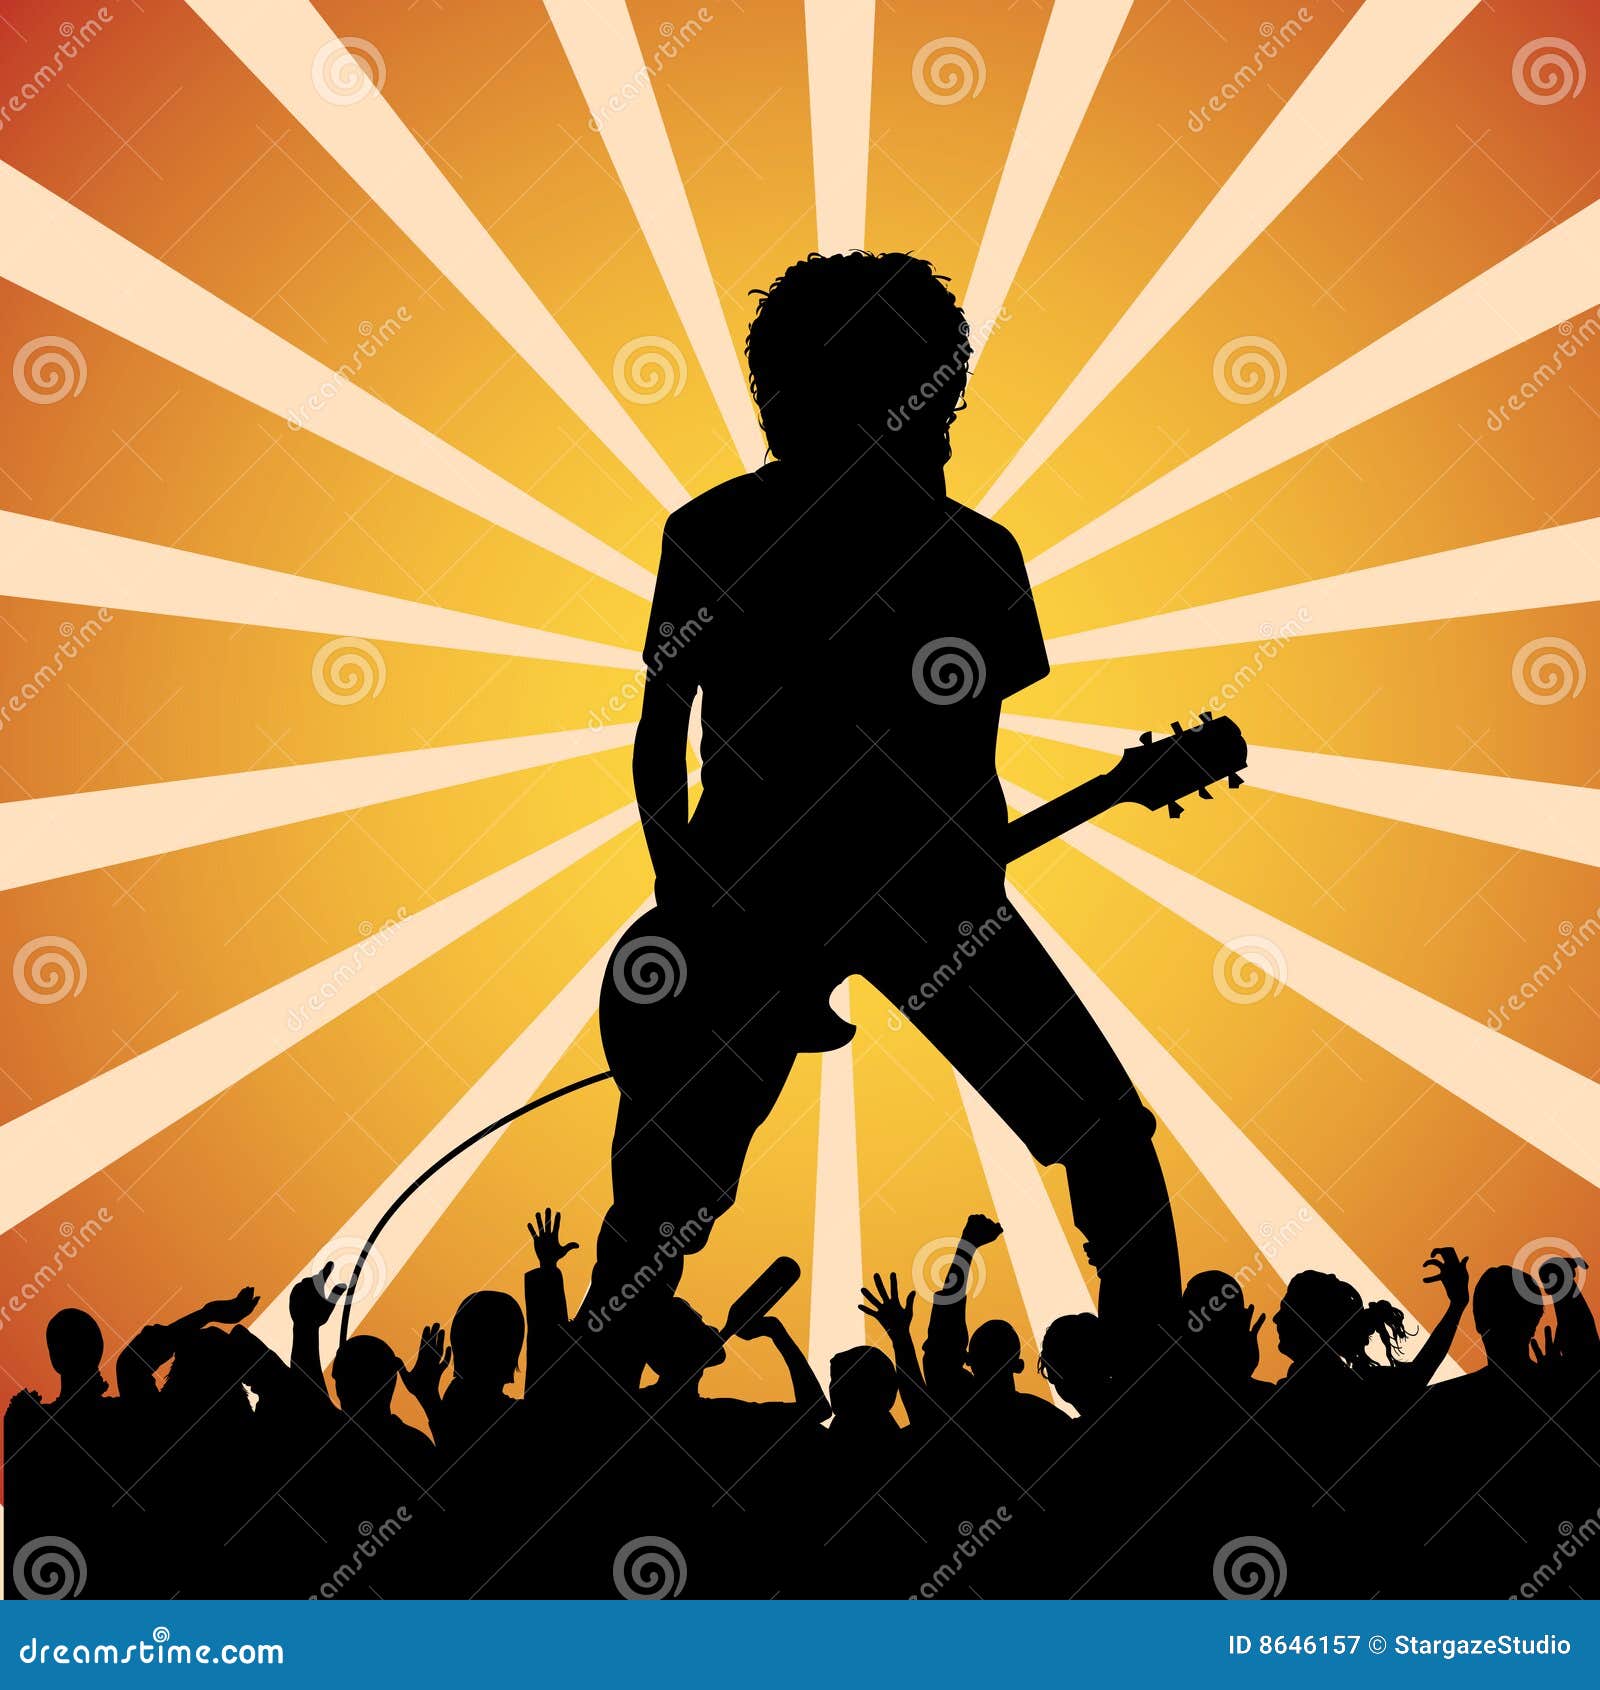 guitarist at a rock concert